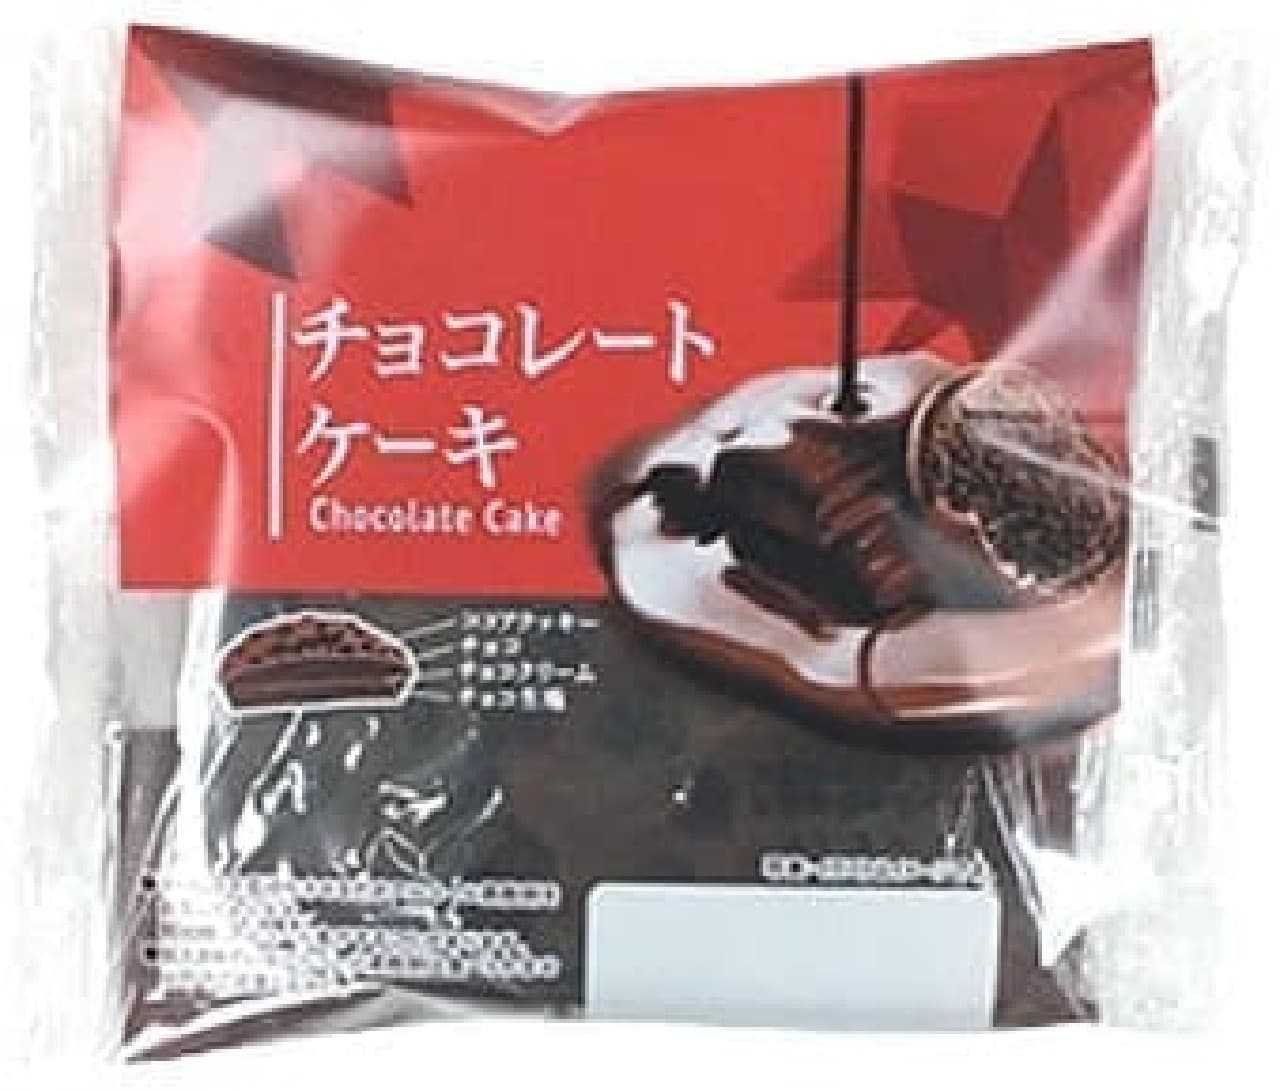 FamilyMart "Chocolate Cake"